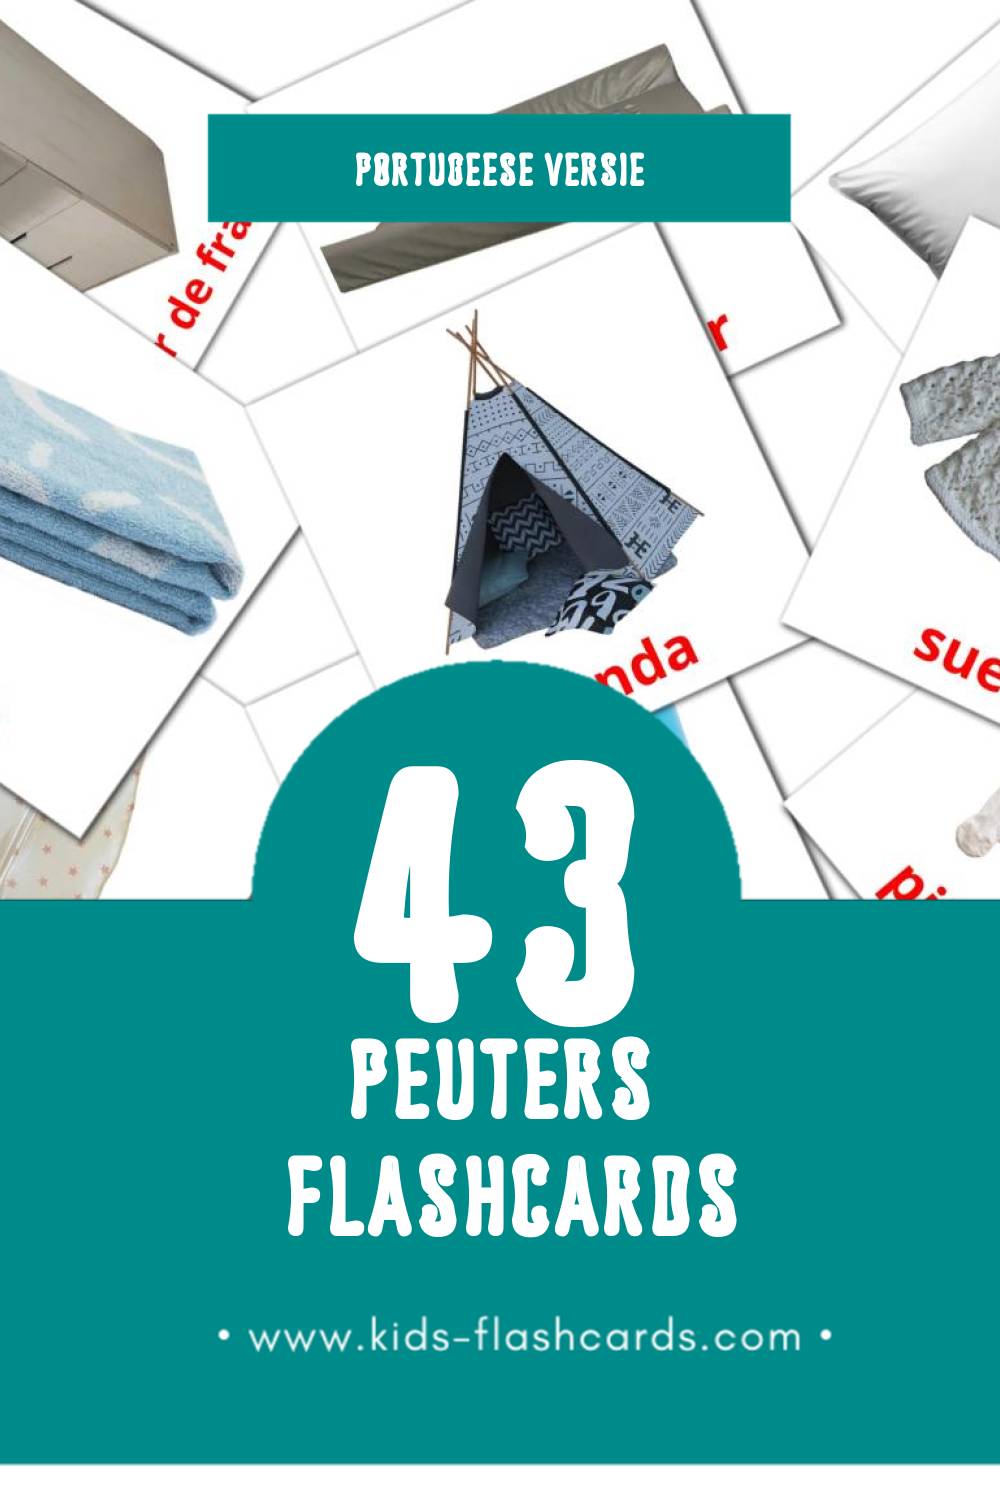 Visuele Bebê Flashcards voor Kleuters (43 kaarten in het Portugees)